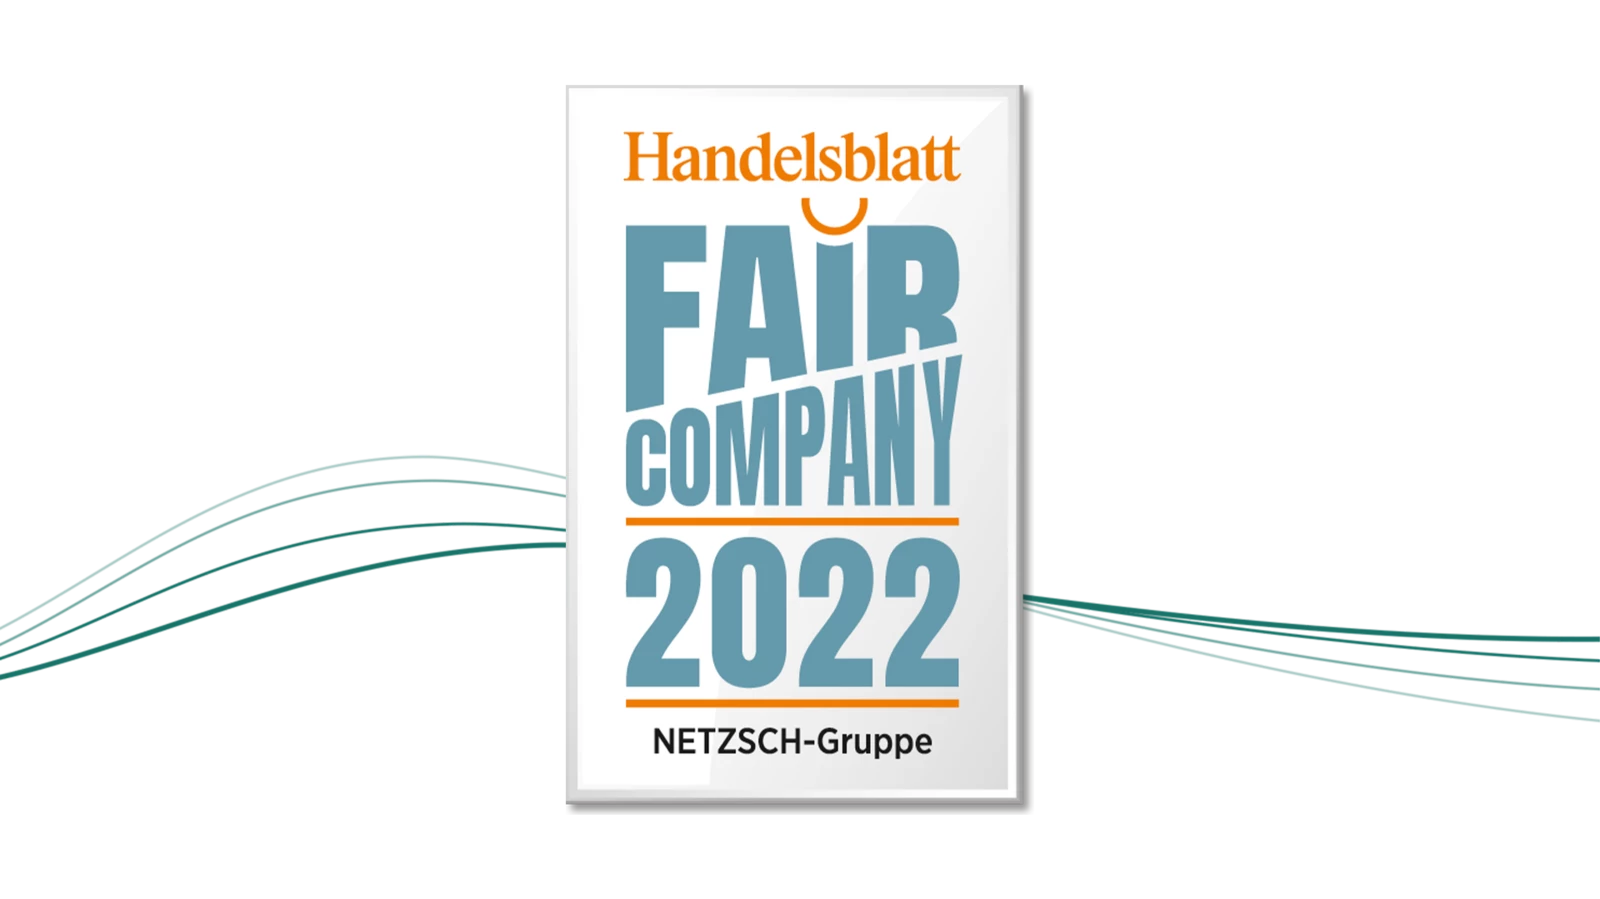 NETZSCH, Pumps, Systems, Fair Company Award